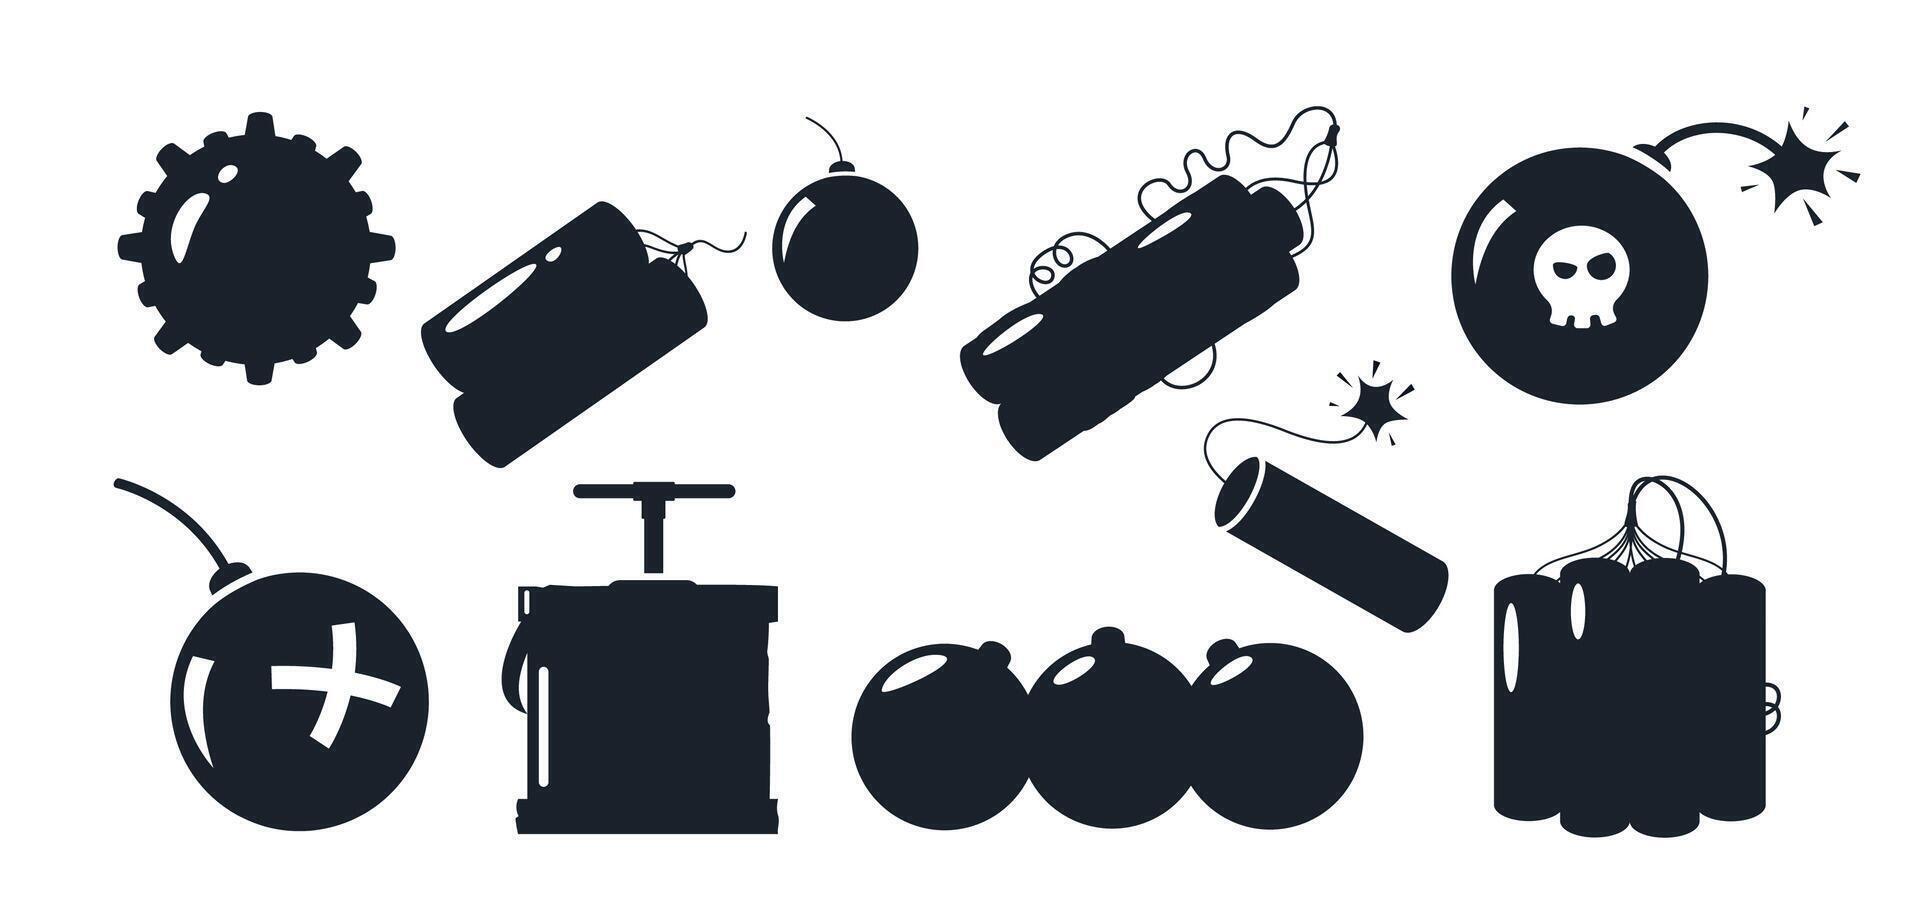 bomba silueta. negro explosivo dinamitar y granada iconos, militar y civil peligro simbolos vector aislado colección